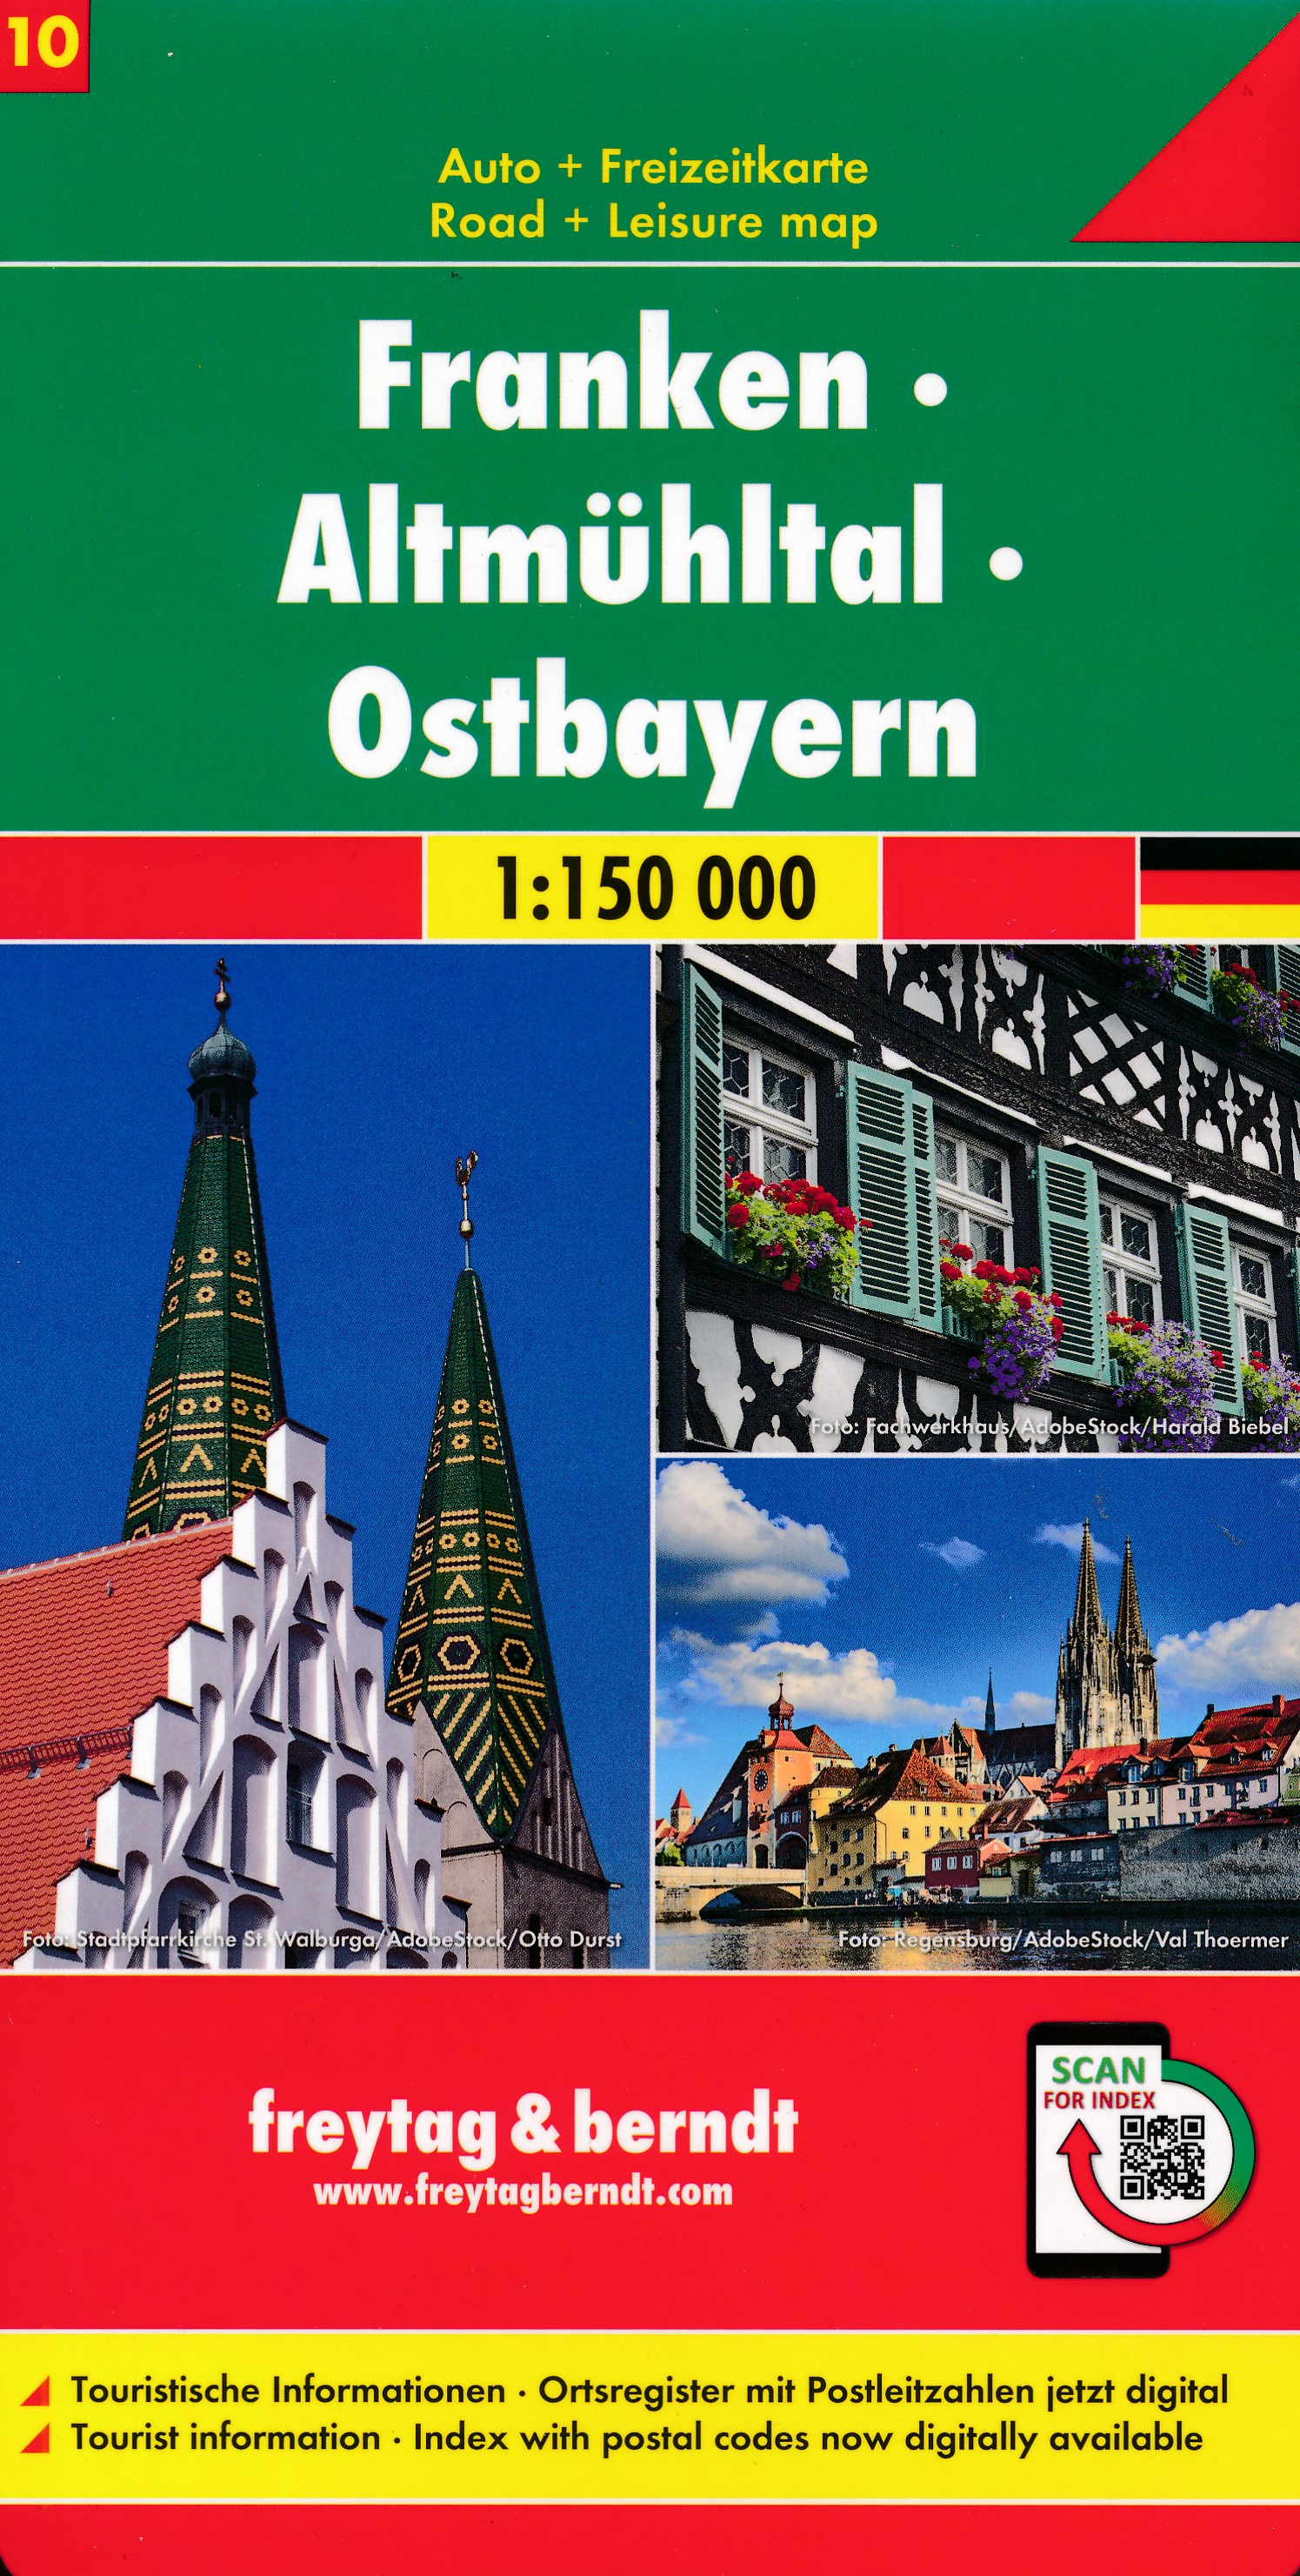 Online bestellen: Wegenkaart - landkaart 10 Franken - Altmühltal - Ostbayern | Freytag & Berndt